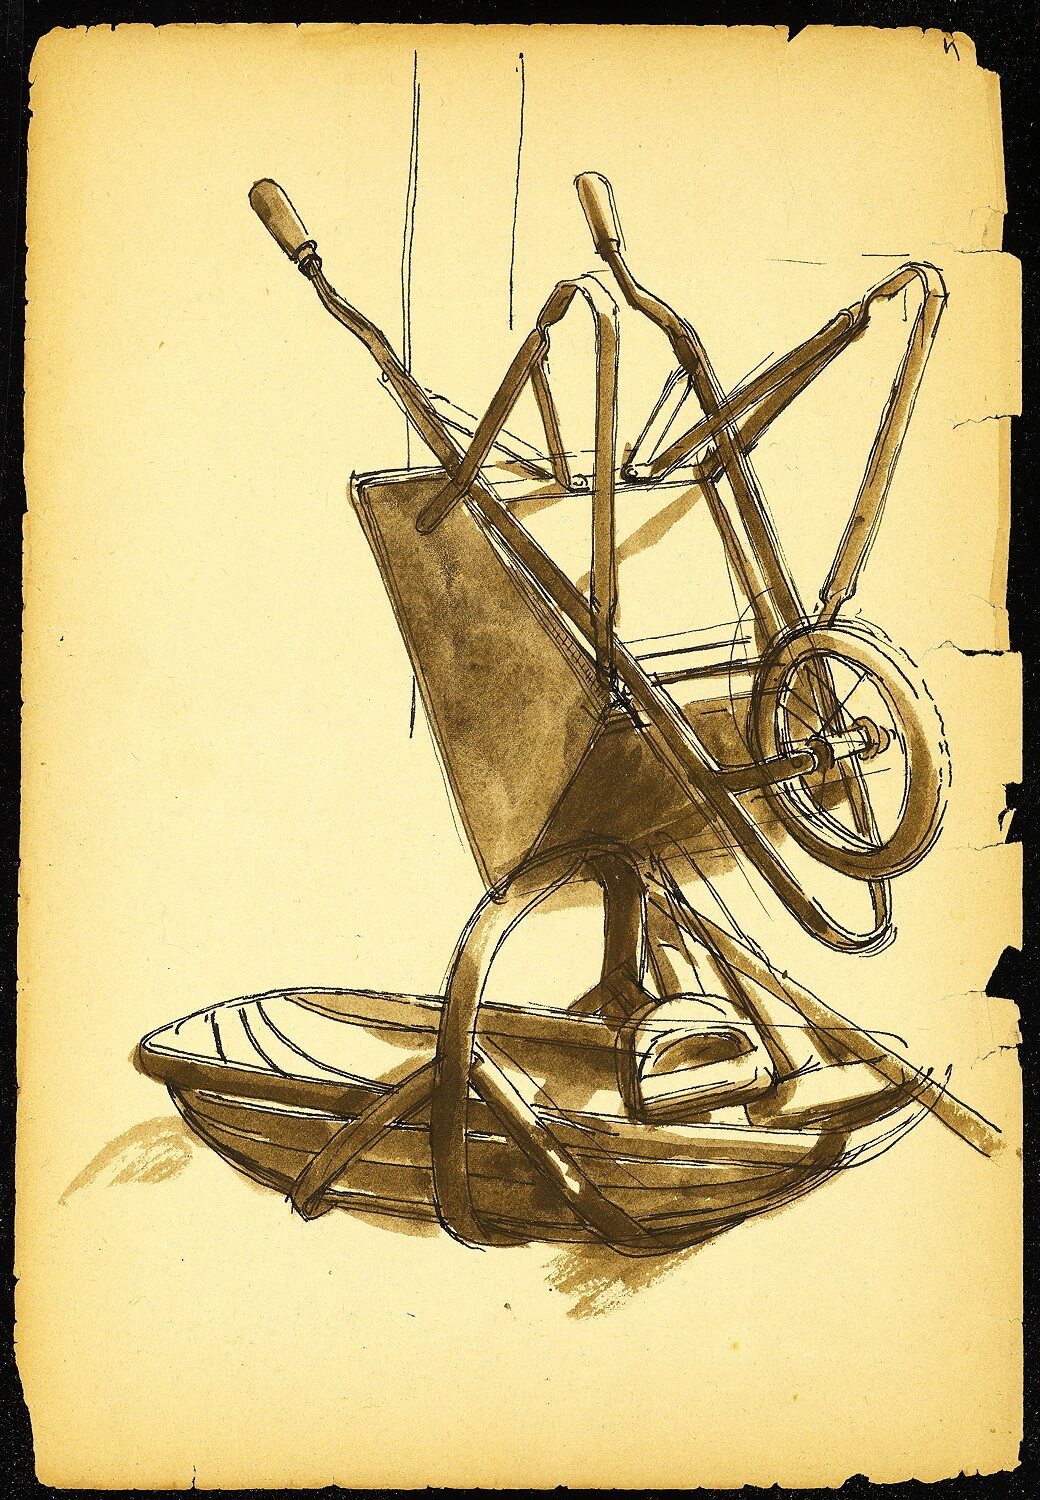 Charles Mahoney - Wheelbarrow and basket